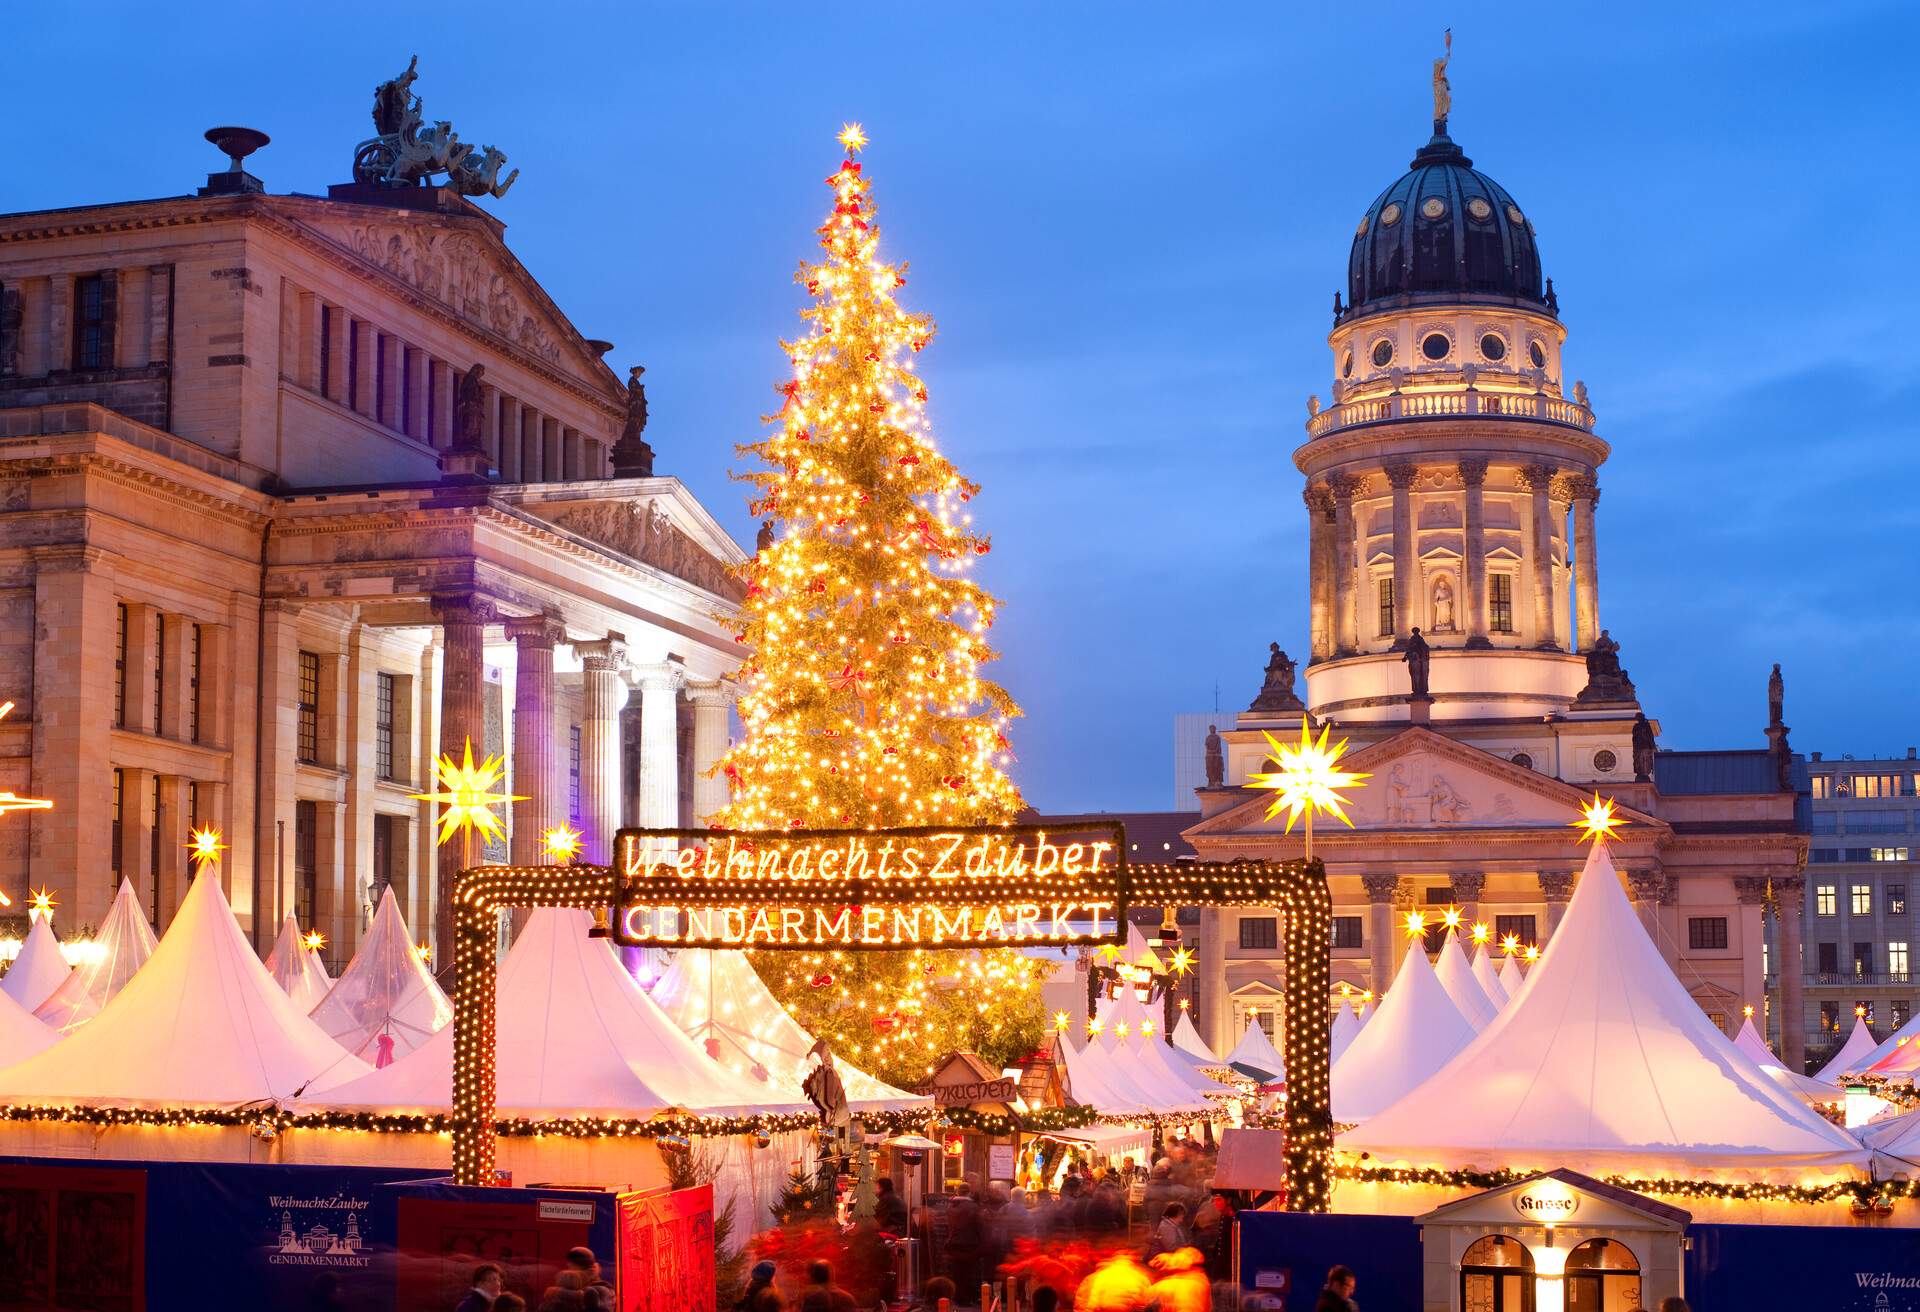 Christmas Market - Gendarmenmarkt, Berlin, Germany